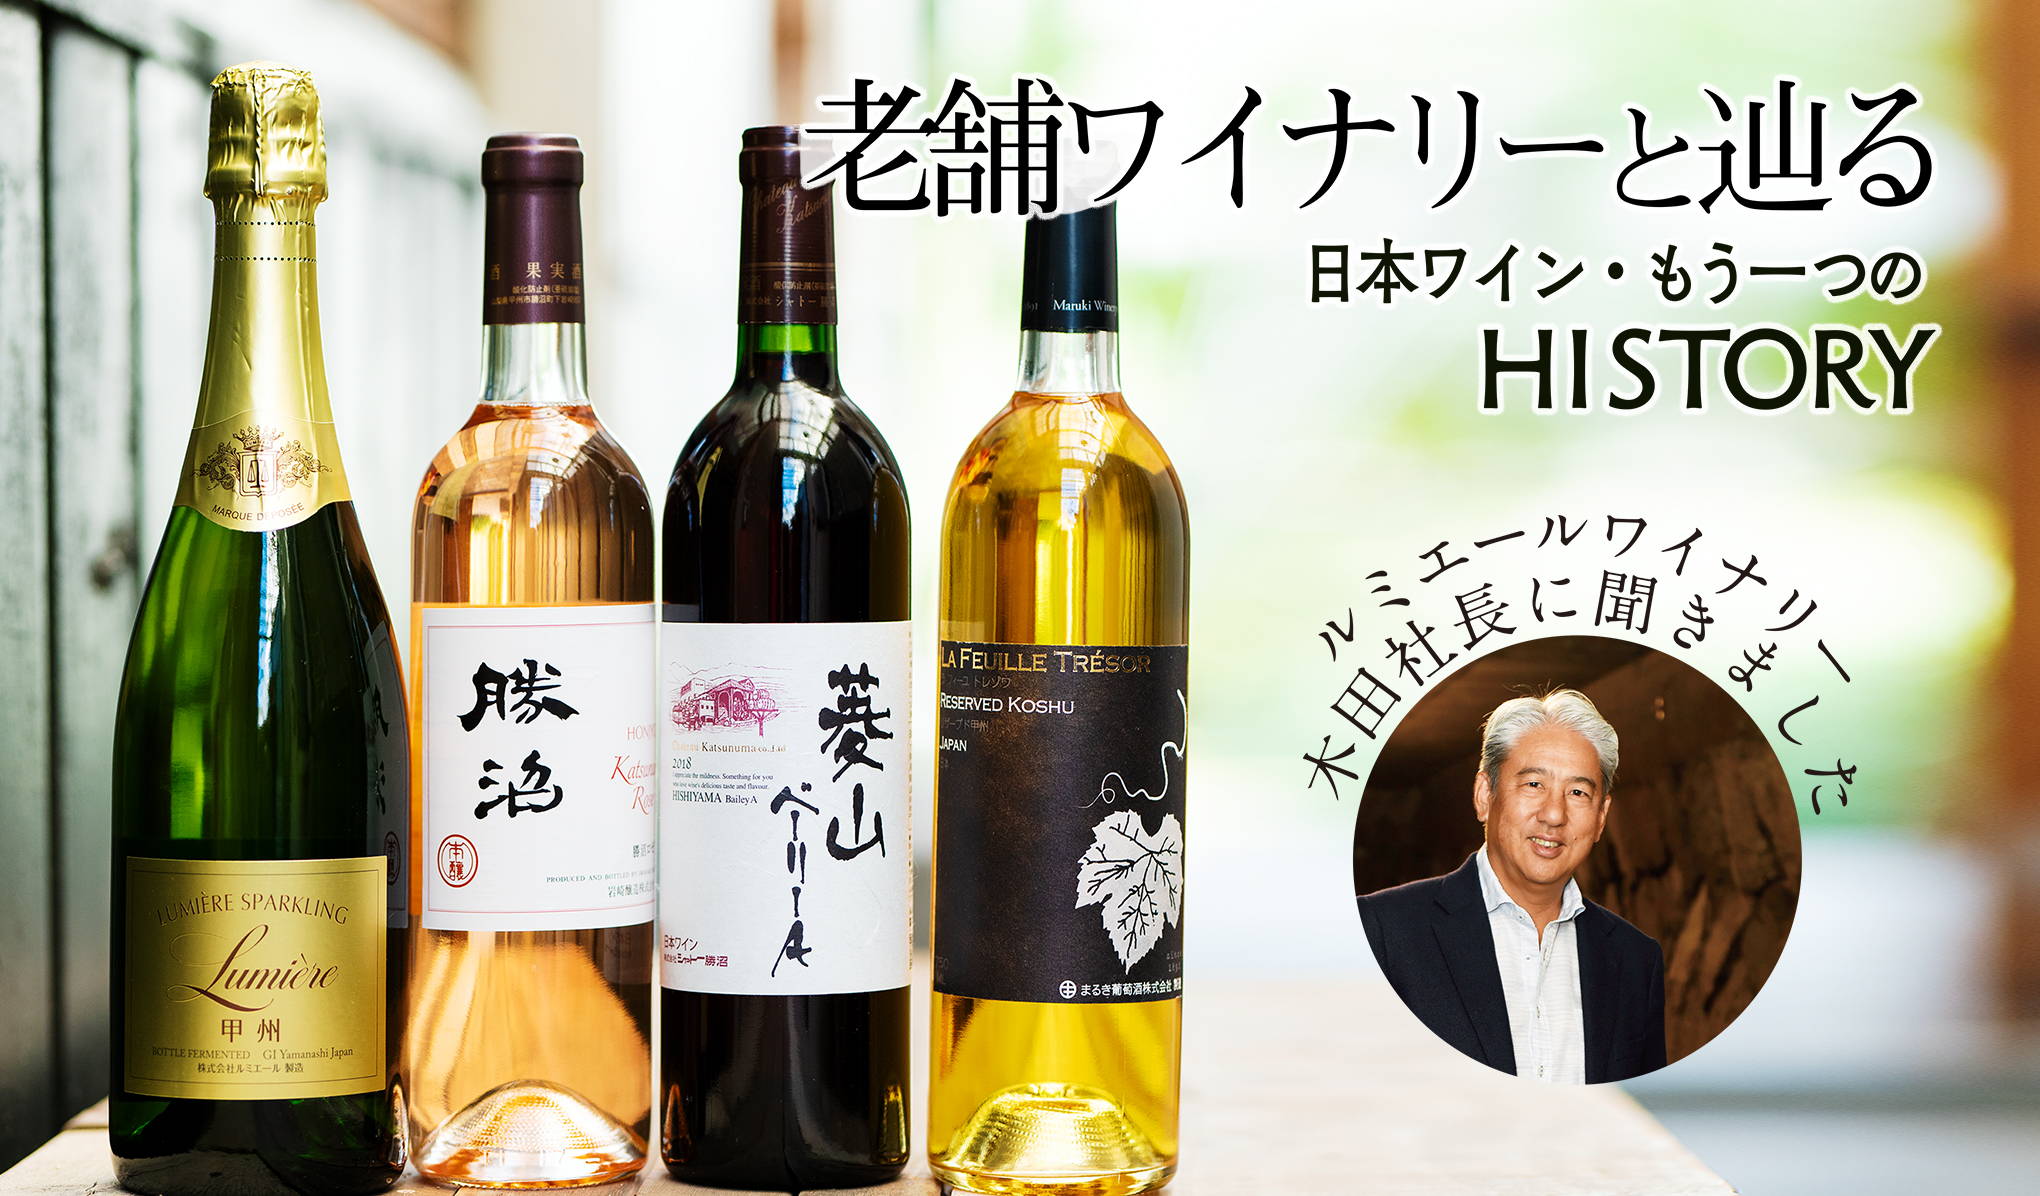 老舗ワイナリーと巡る日本ワイン。もう一つのHISTORY